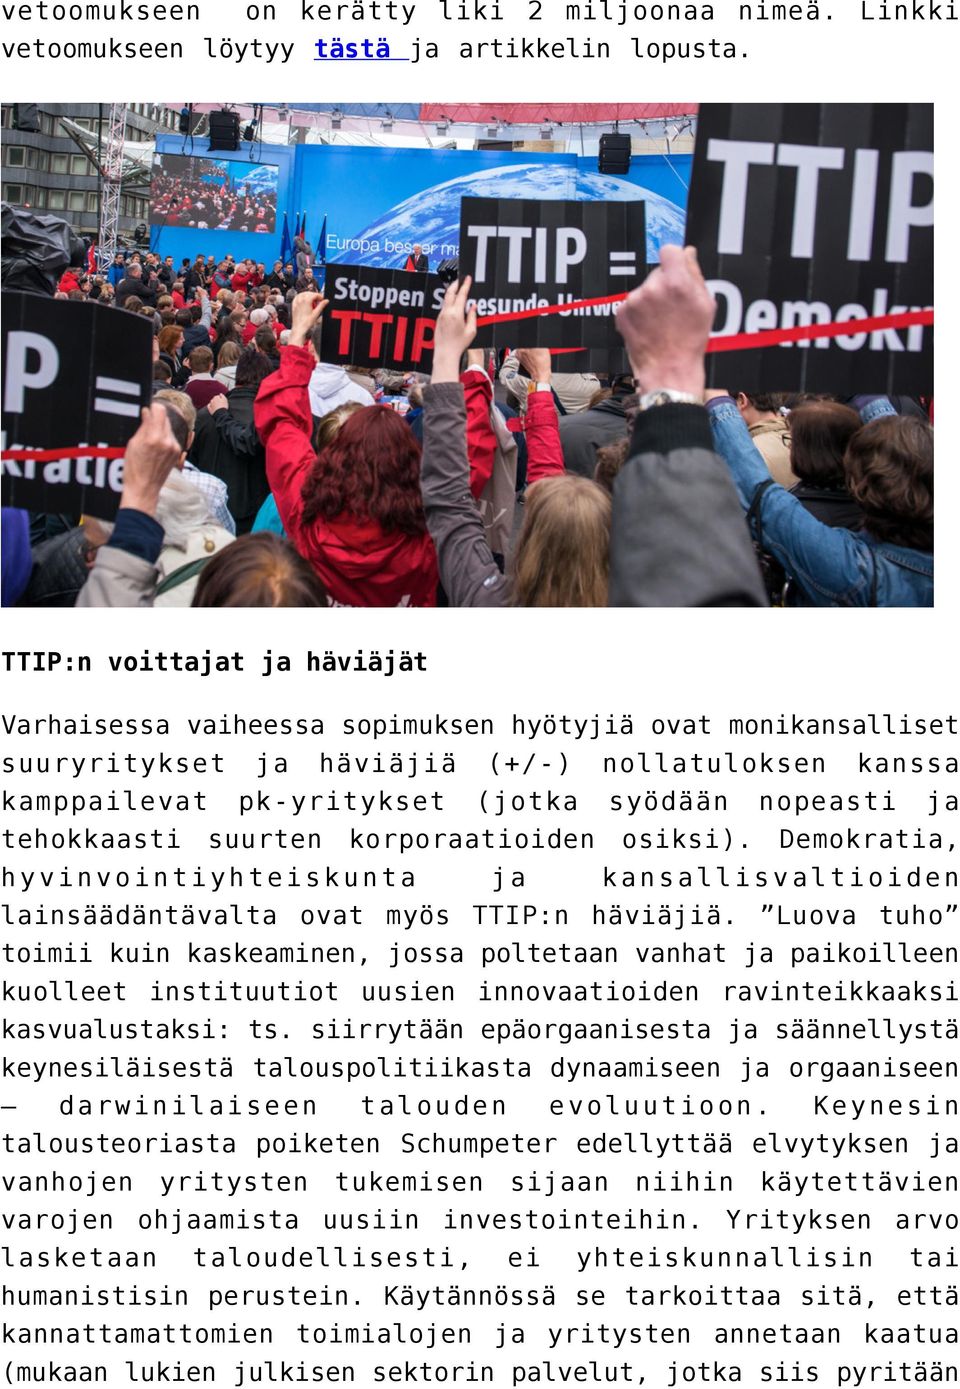 tehokkaasti suurten korporaatioiden osiksi). Demokratia, hyvinvointiyhteiskunta ja kansallisvaltioiden lainsäädäntävalta ovat myös TTIP:n häviäjiä.